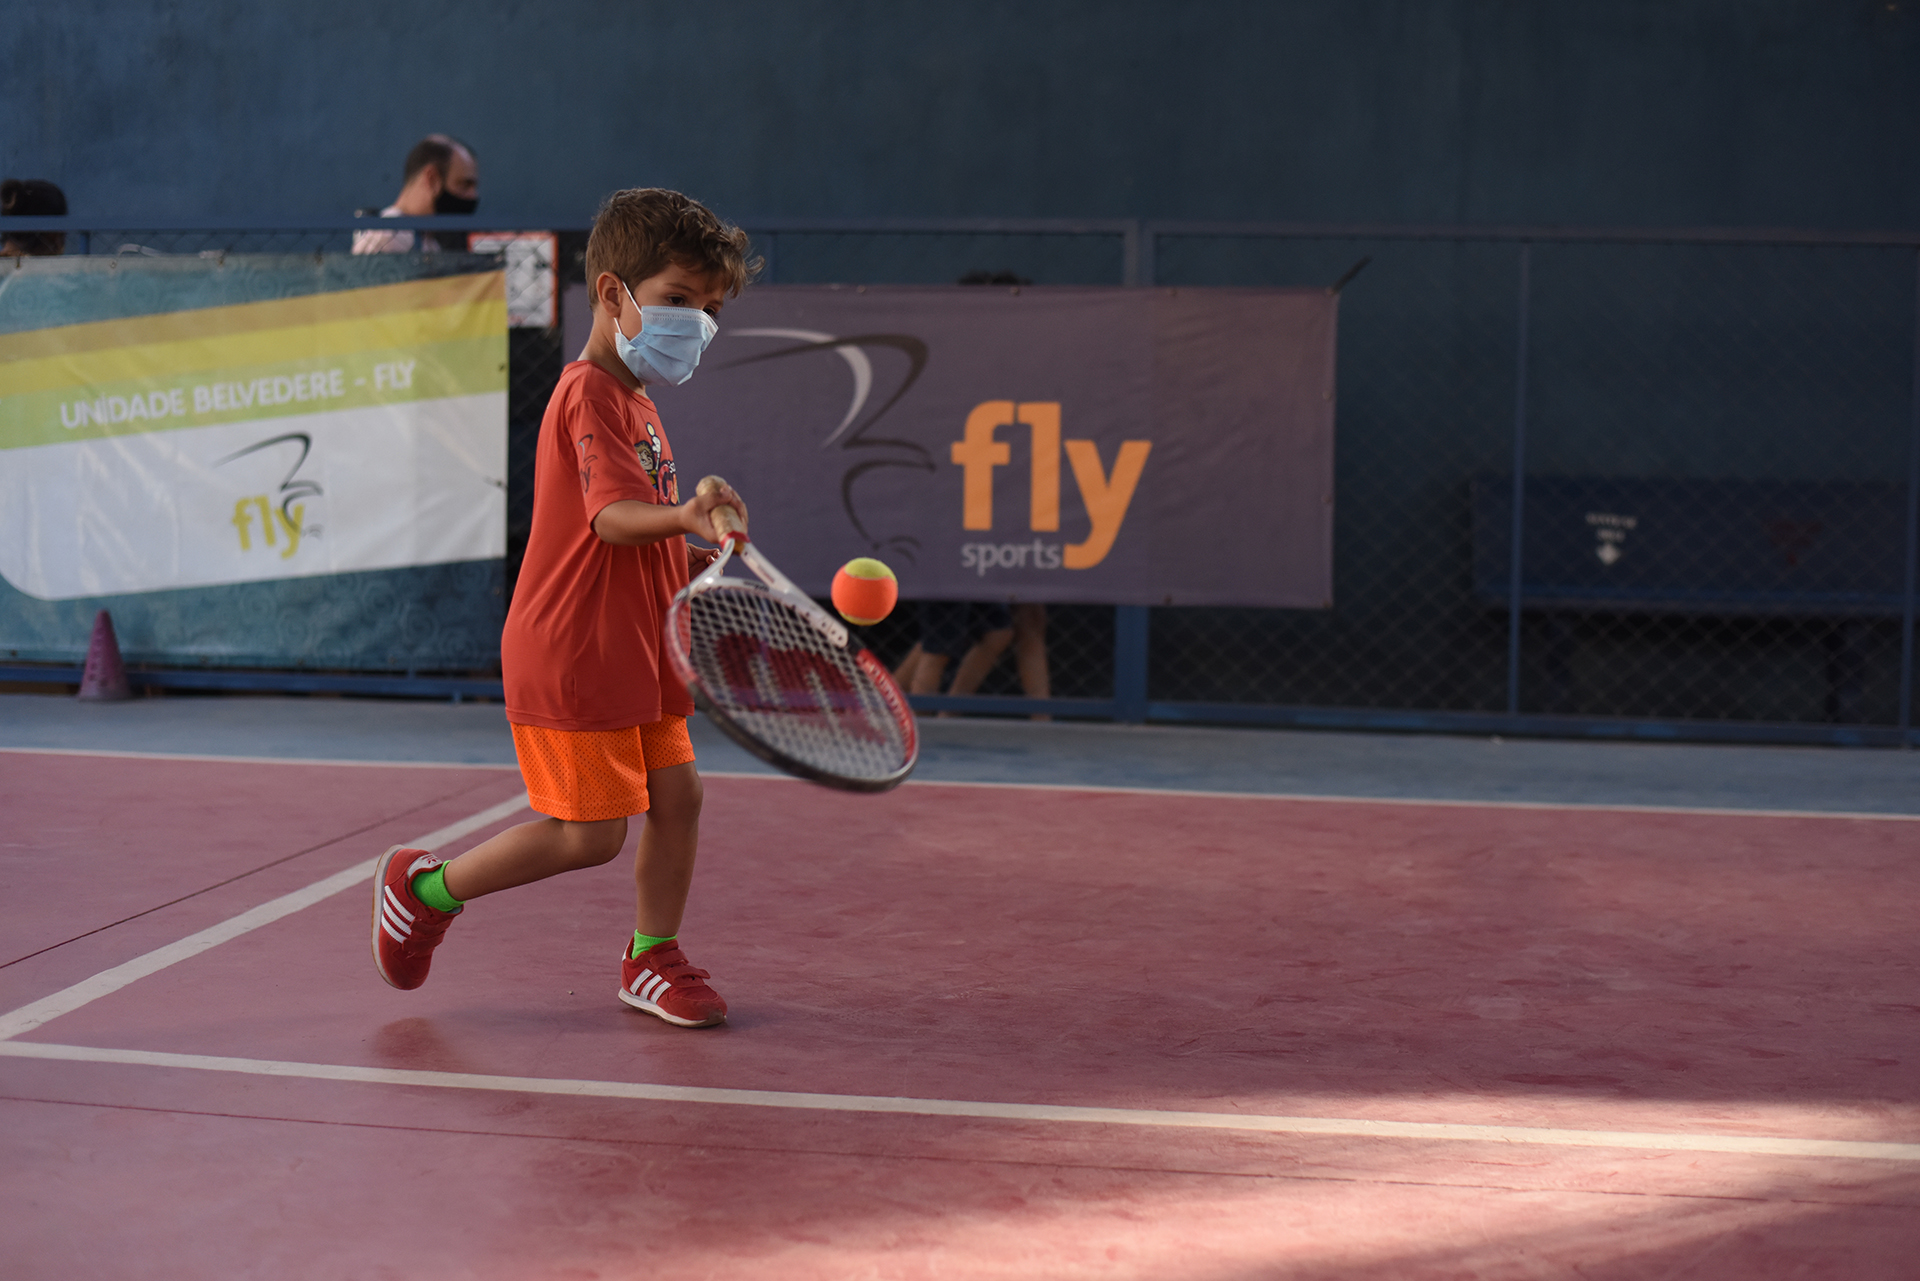 Tênis para crianças - Fly Sports